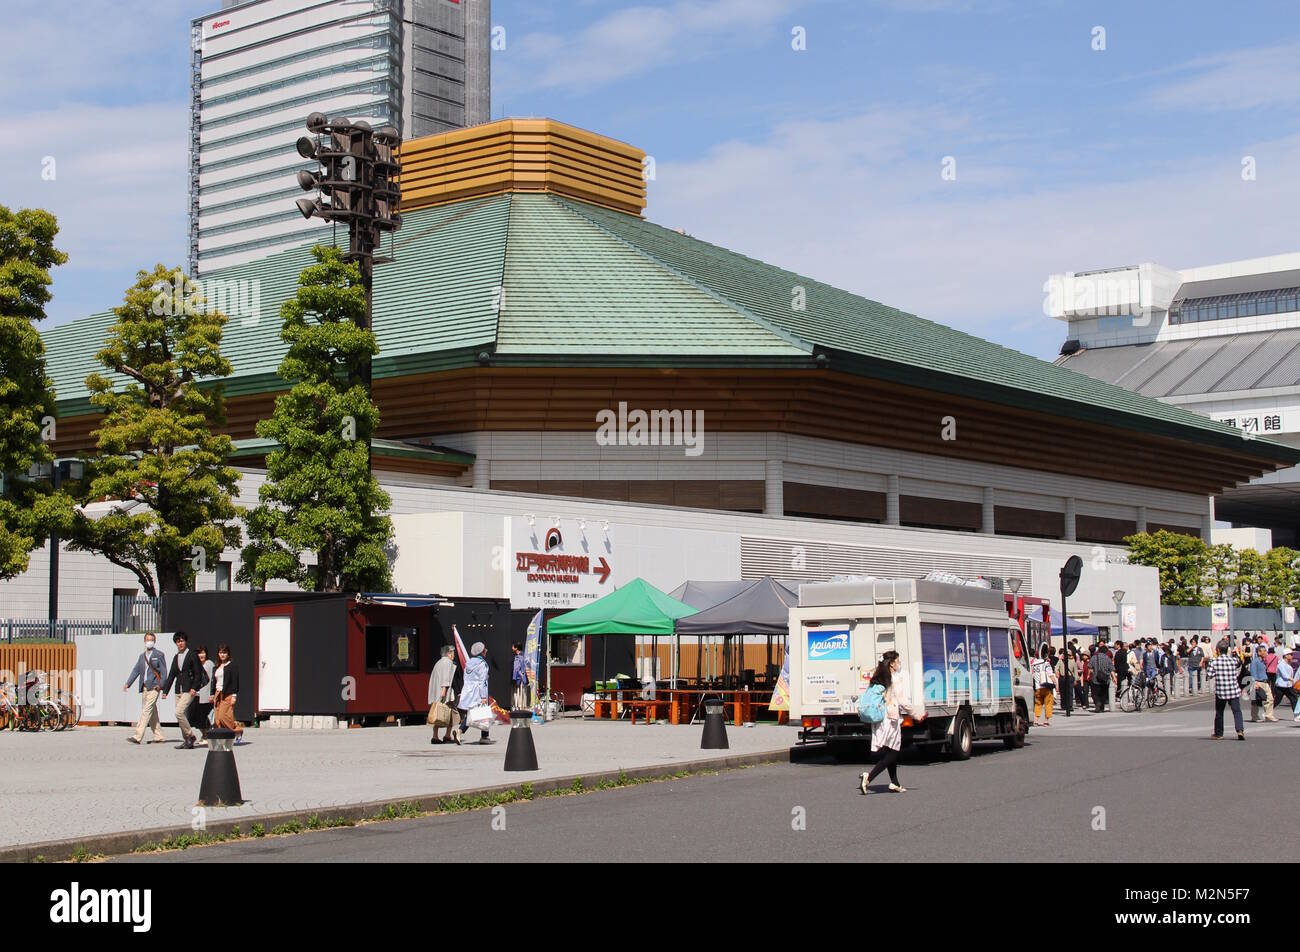 Il Ryogoku Kokugikan, un'arena sportiva utilizzata principalmente per sumo. Esso sarà utilizzato come sede per il pugilato al 2020 Olimpiadi di Tokyo. (Primavera 2017) Foto Stock